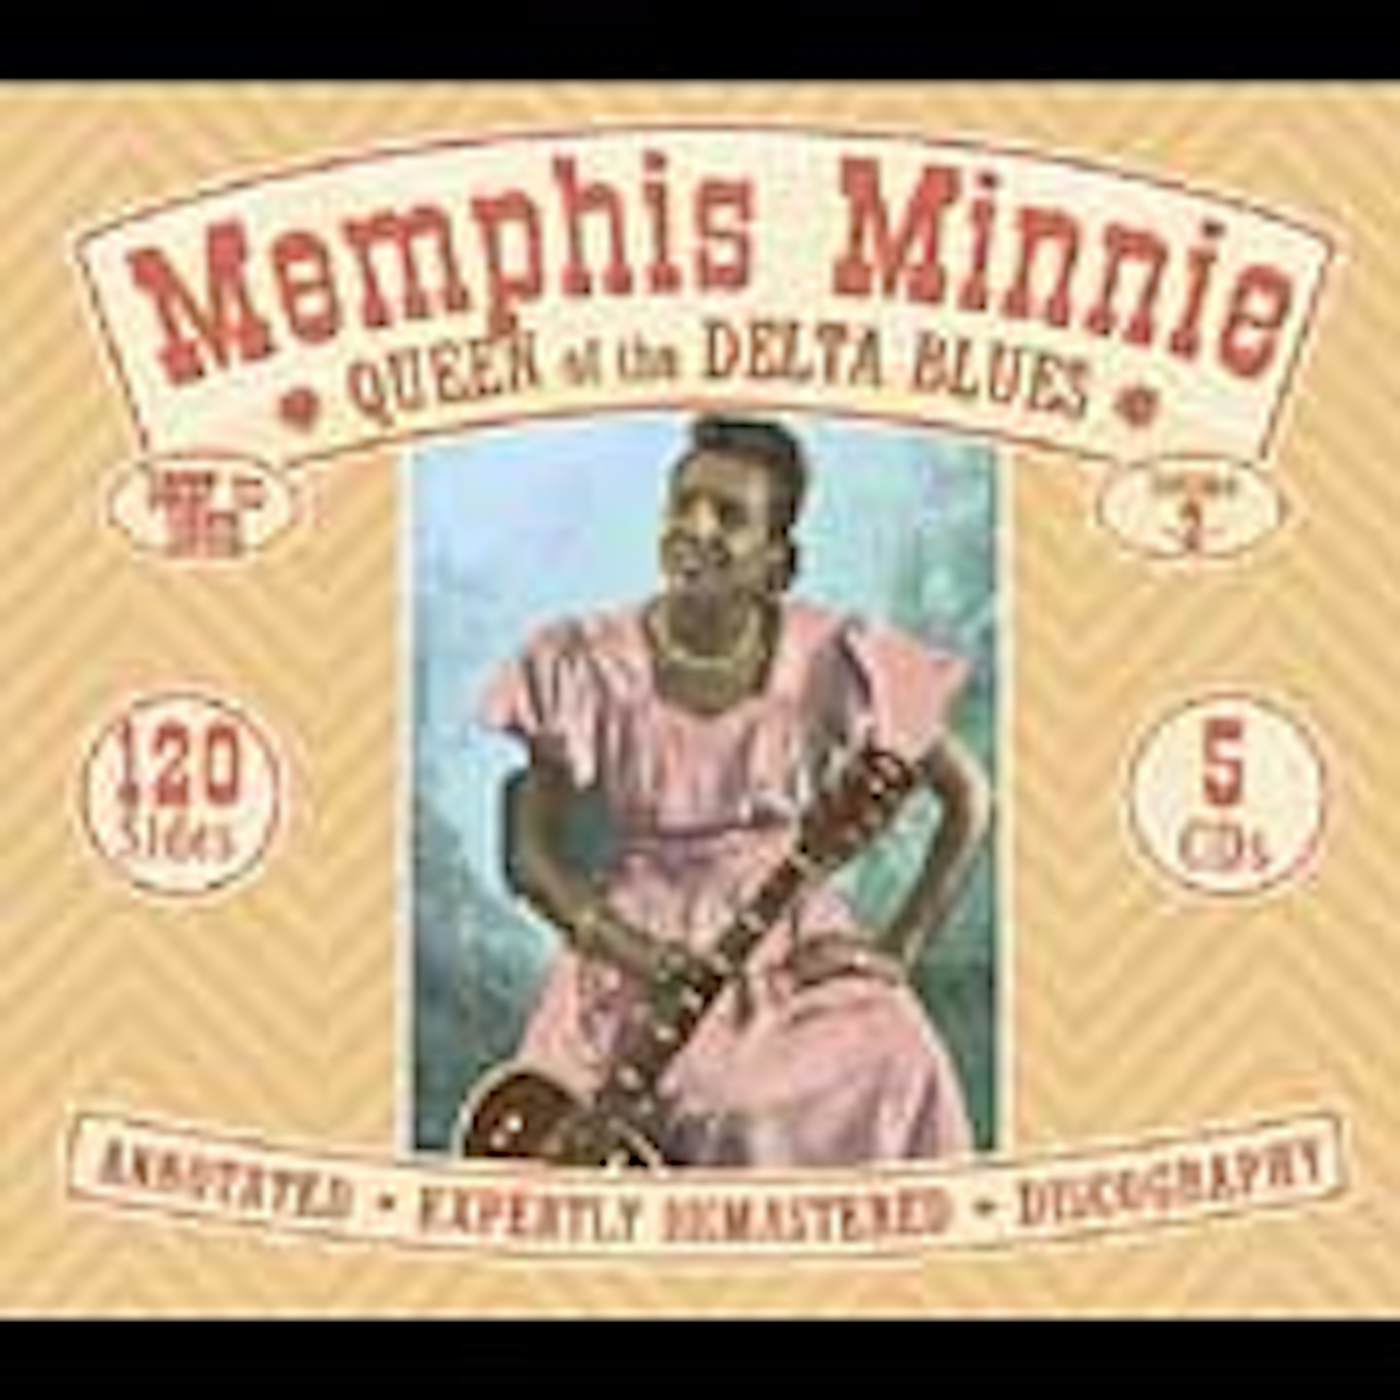 Memphis Minnie QUEEN OF THE DELTA BLUES CD